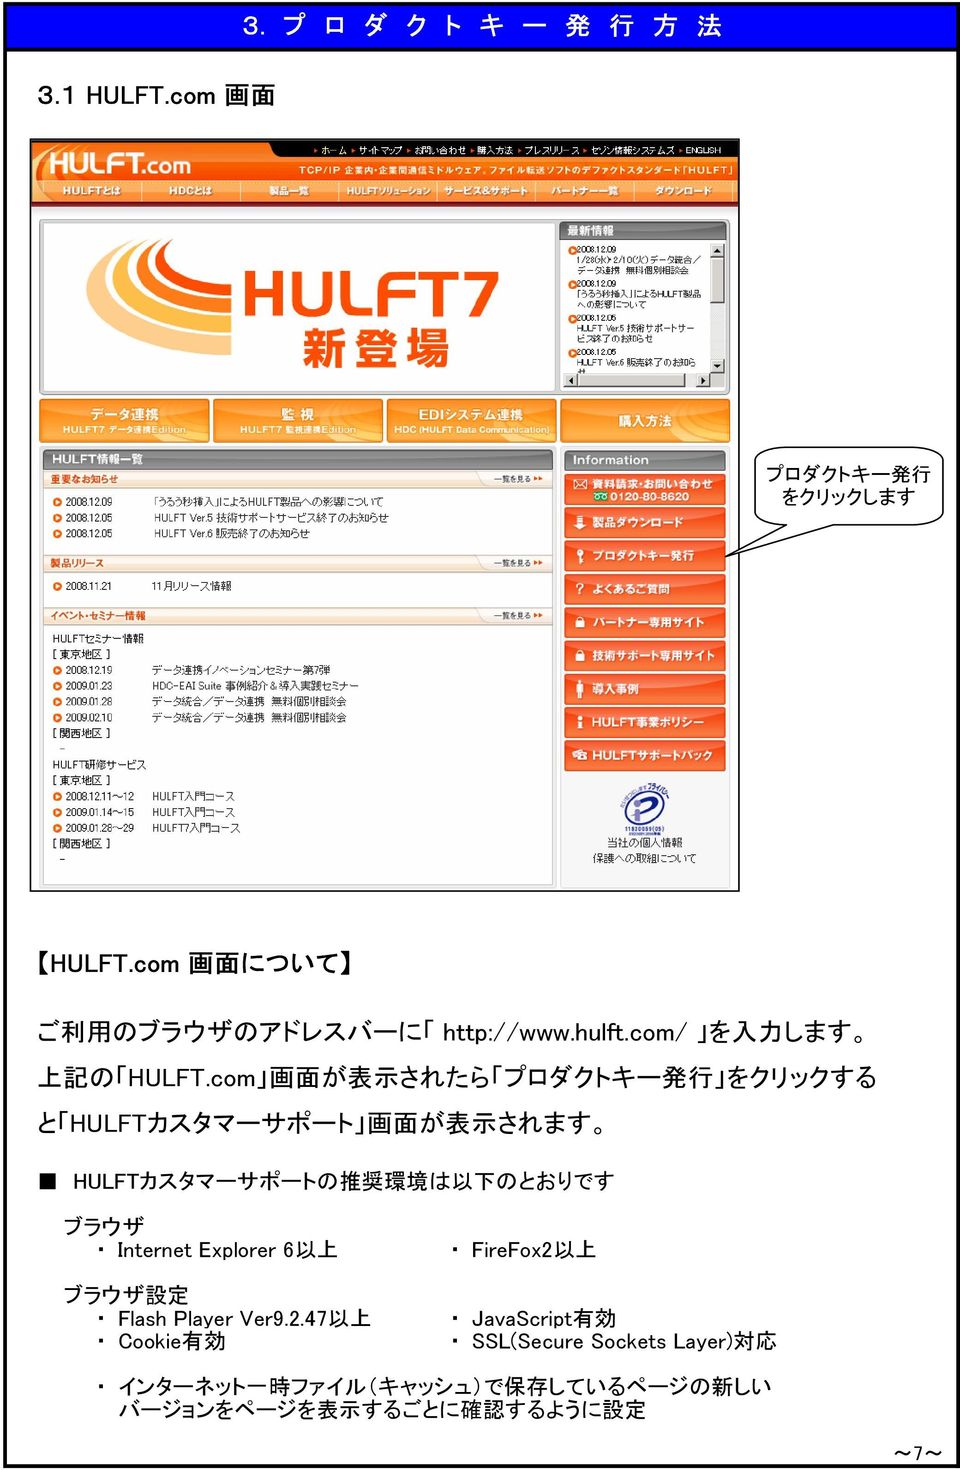 com 画 面 が 表 示 されたら プロダクトキー 発 行 をクリックする と HULFTカスタマーサポート 画 面 が 表 示 されます HULFTカスタマーサポートの 推 奨 環 境 は 以 下 のとおりです ブラウザ